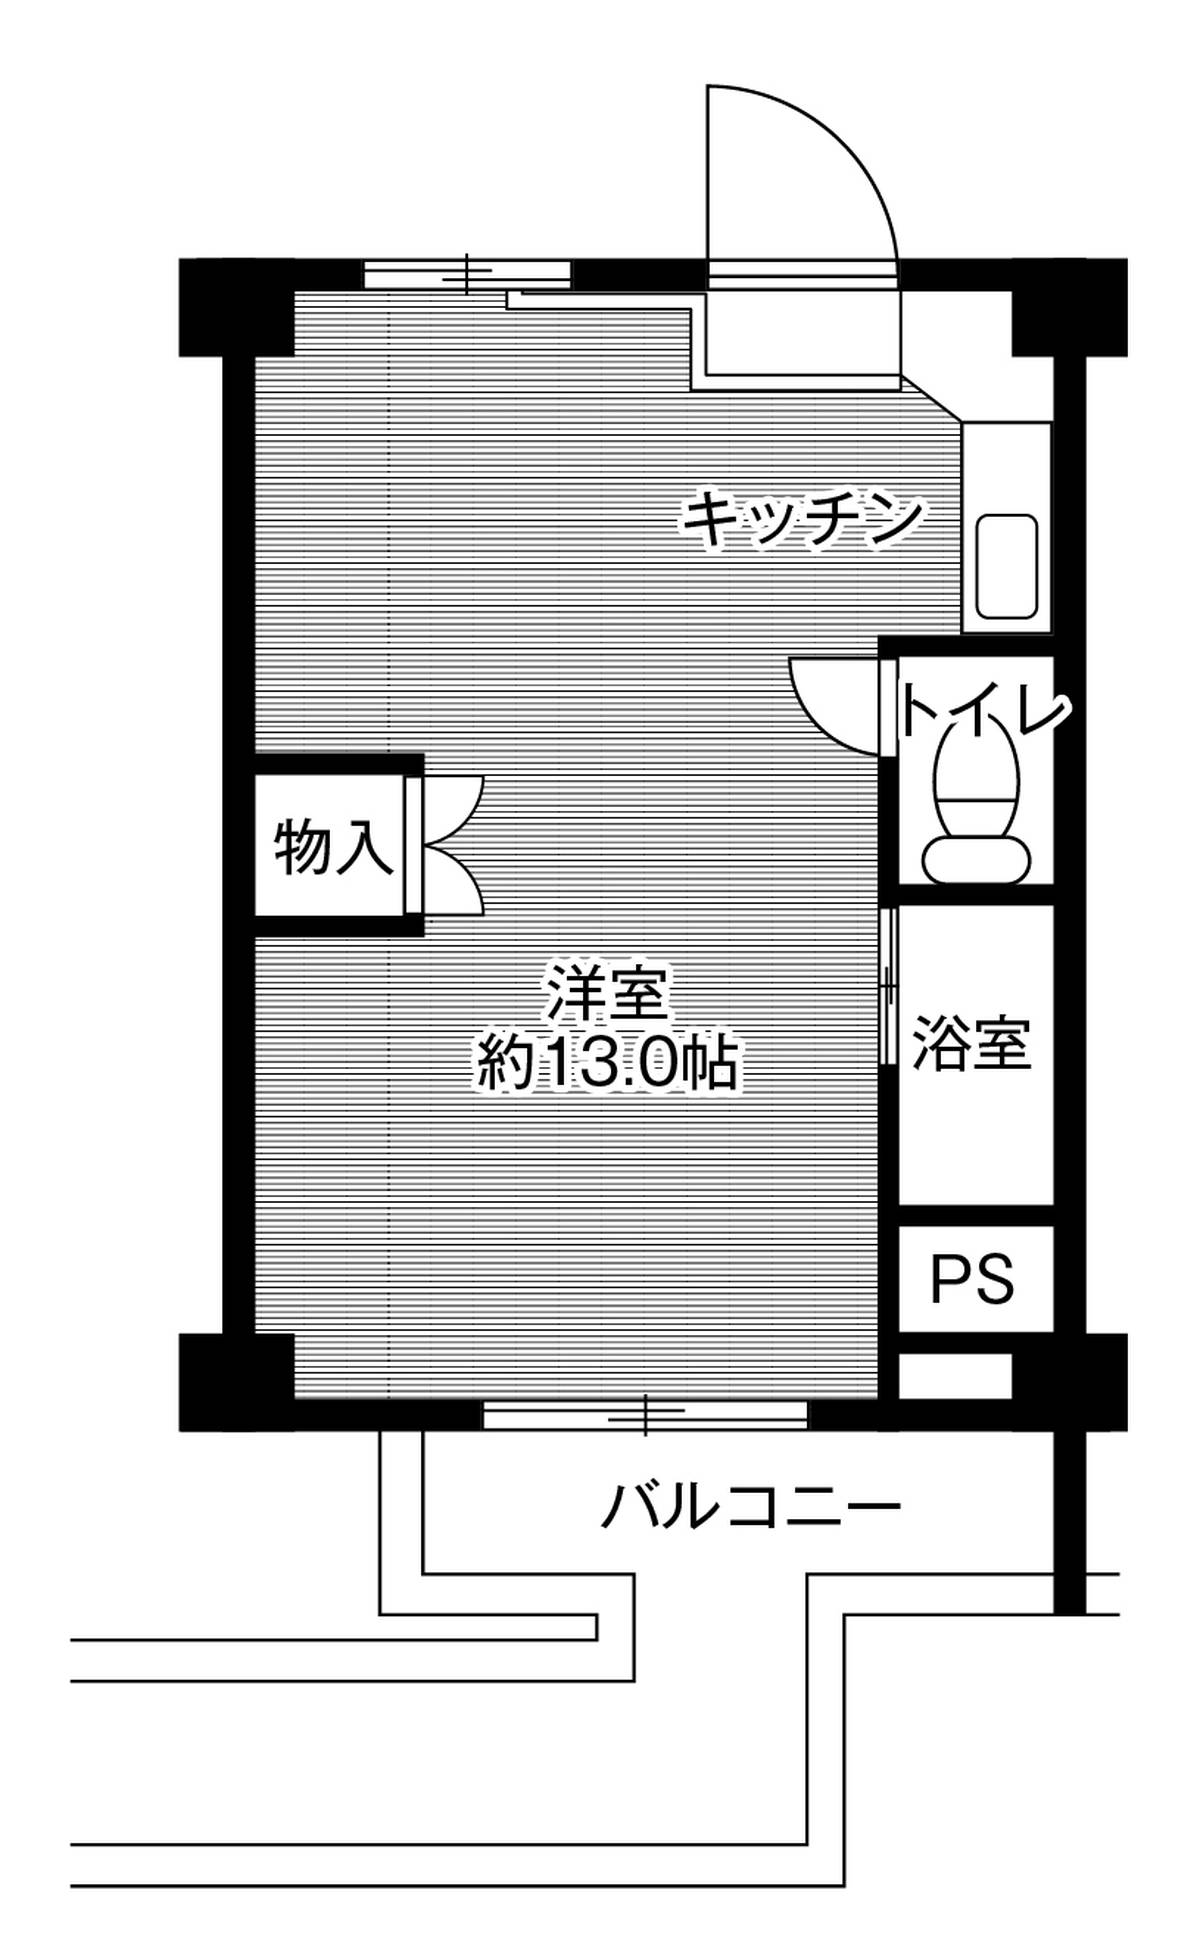 1DK floorplan of Village House Takiyama in Tottori-shi